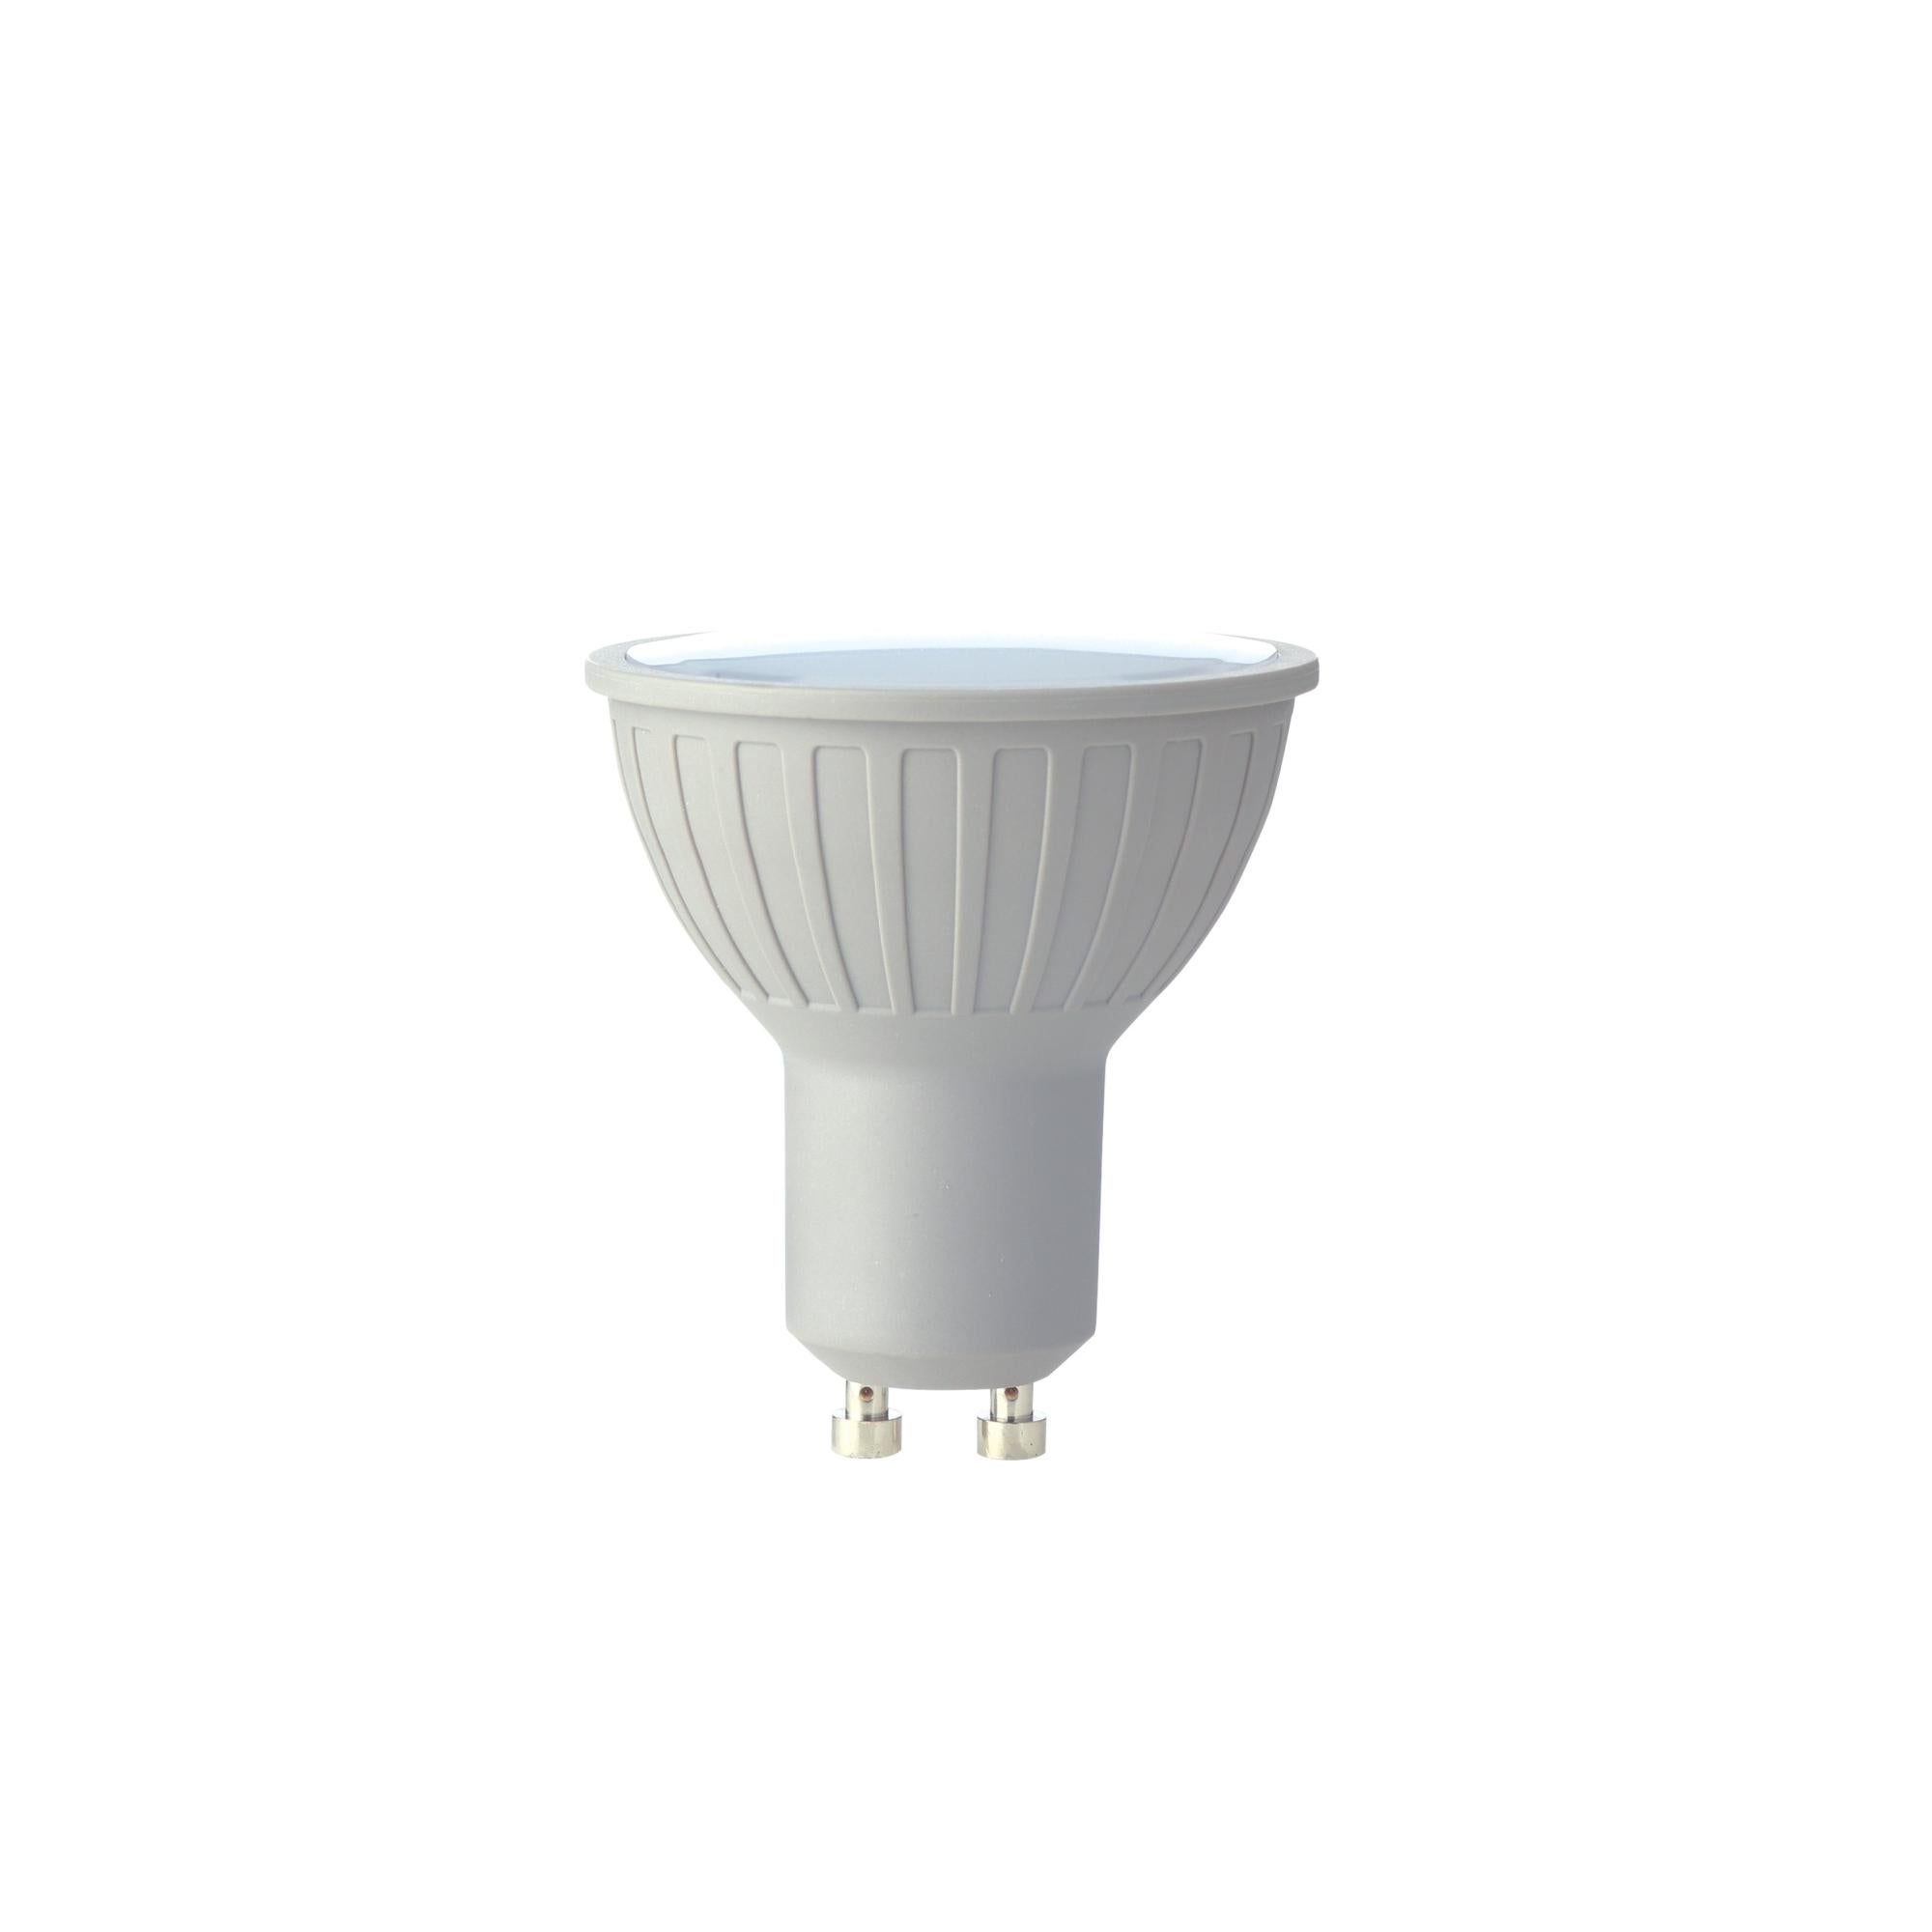 Ampoule LED GU10 blanc froid 5W 450 lm verre mat / pce